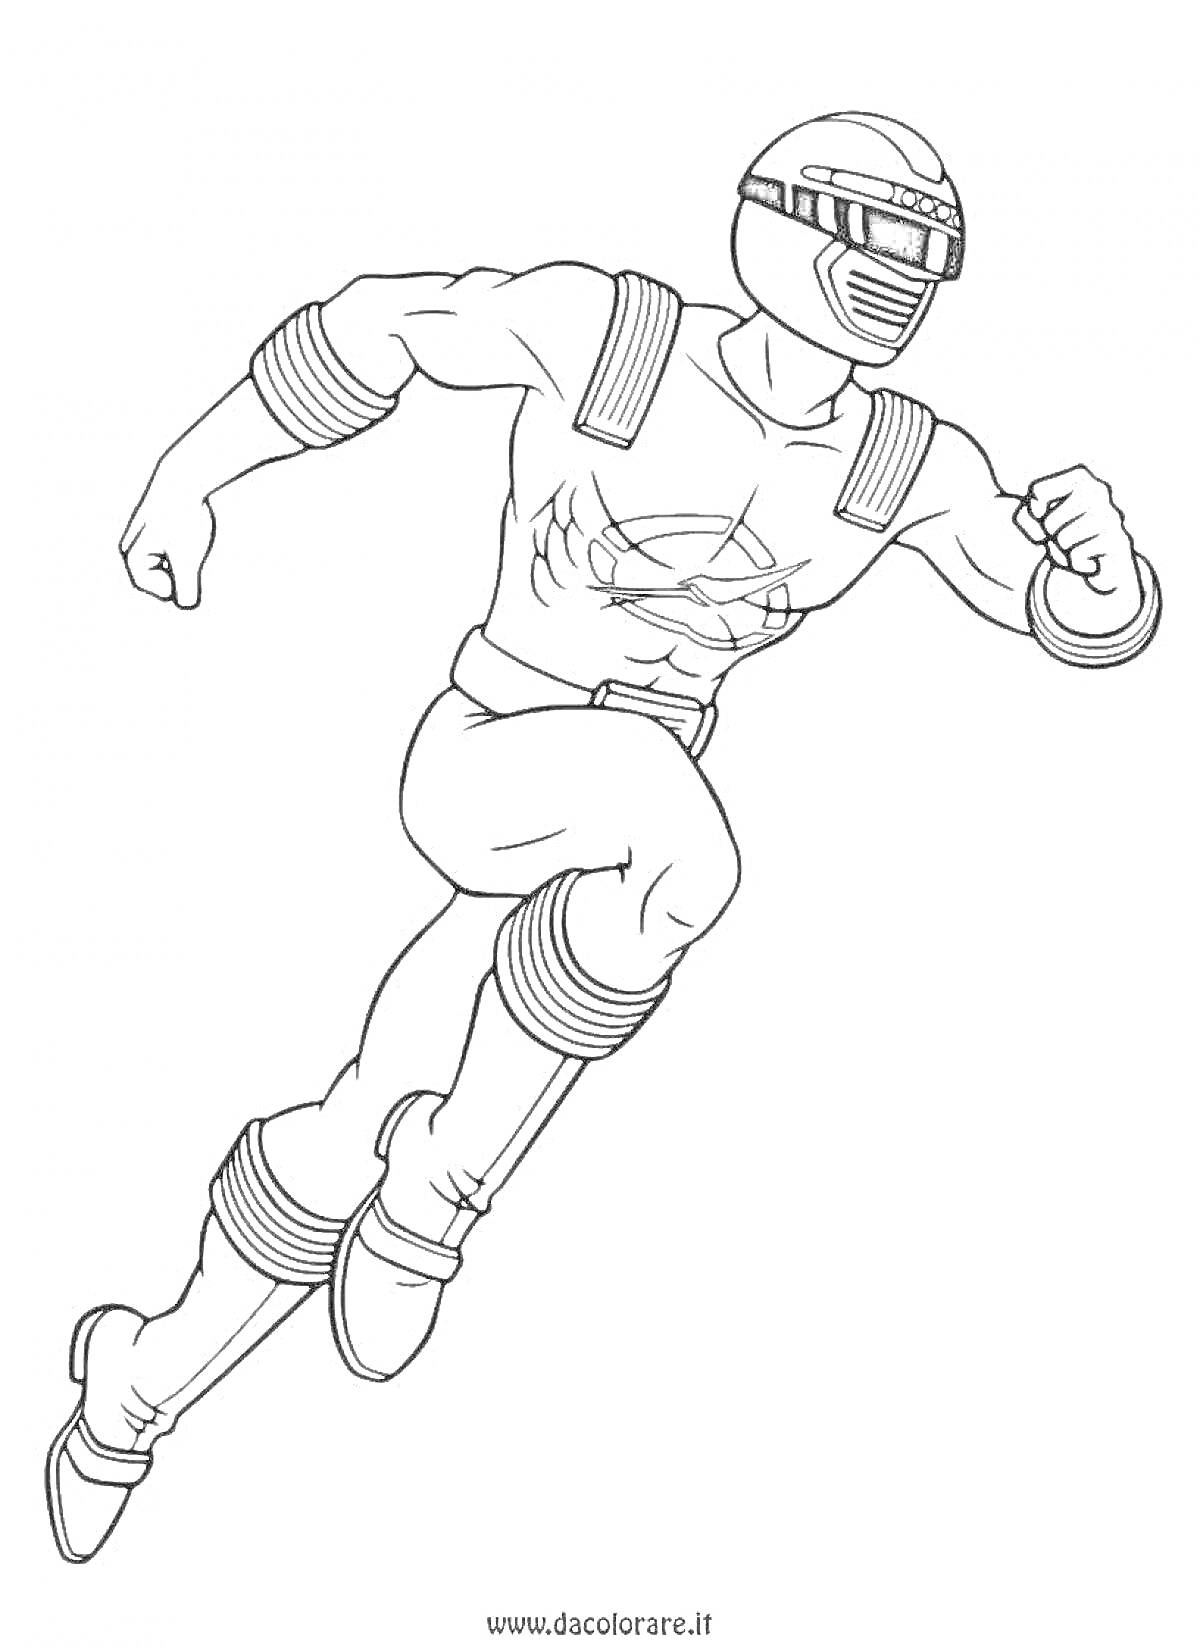 Раскраска Рейнджер в прыжке с шлемом и защитной экипировкой